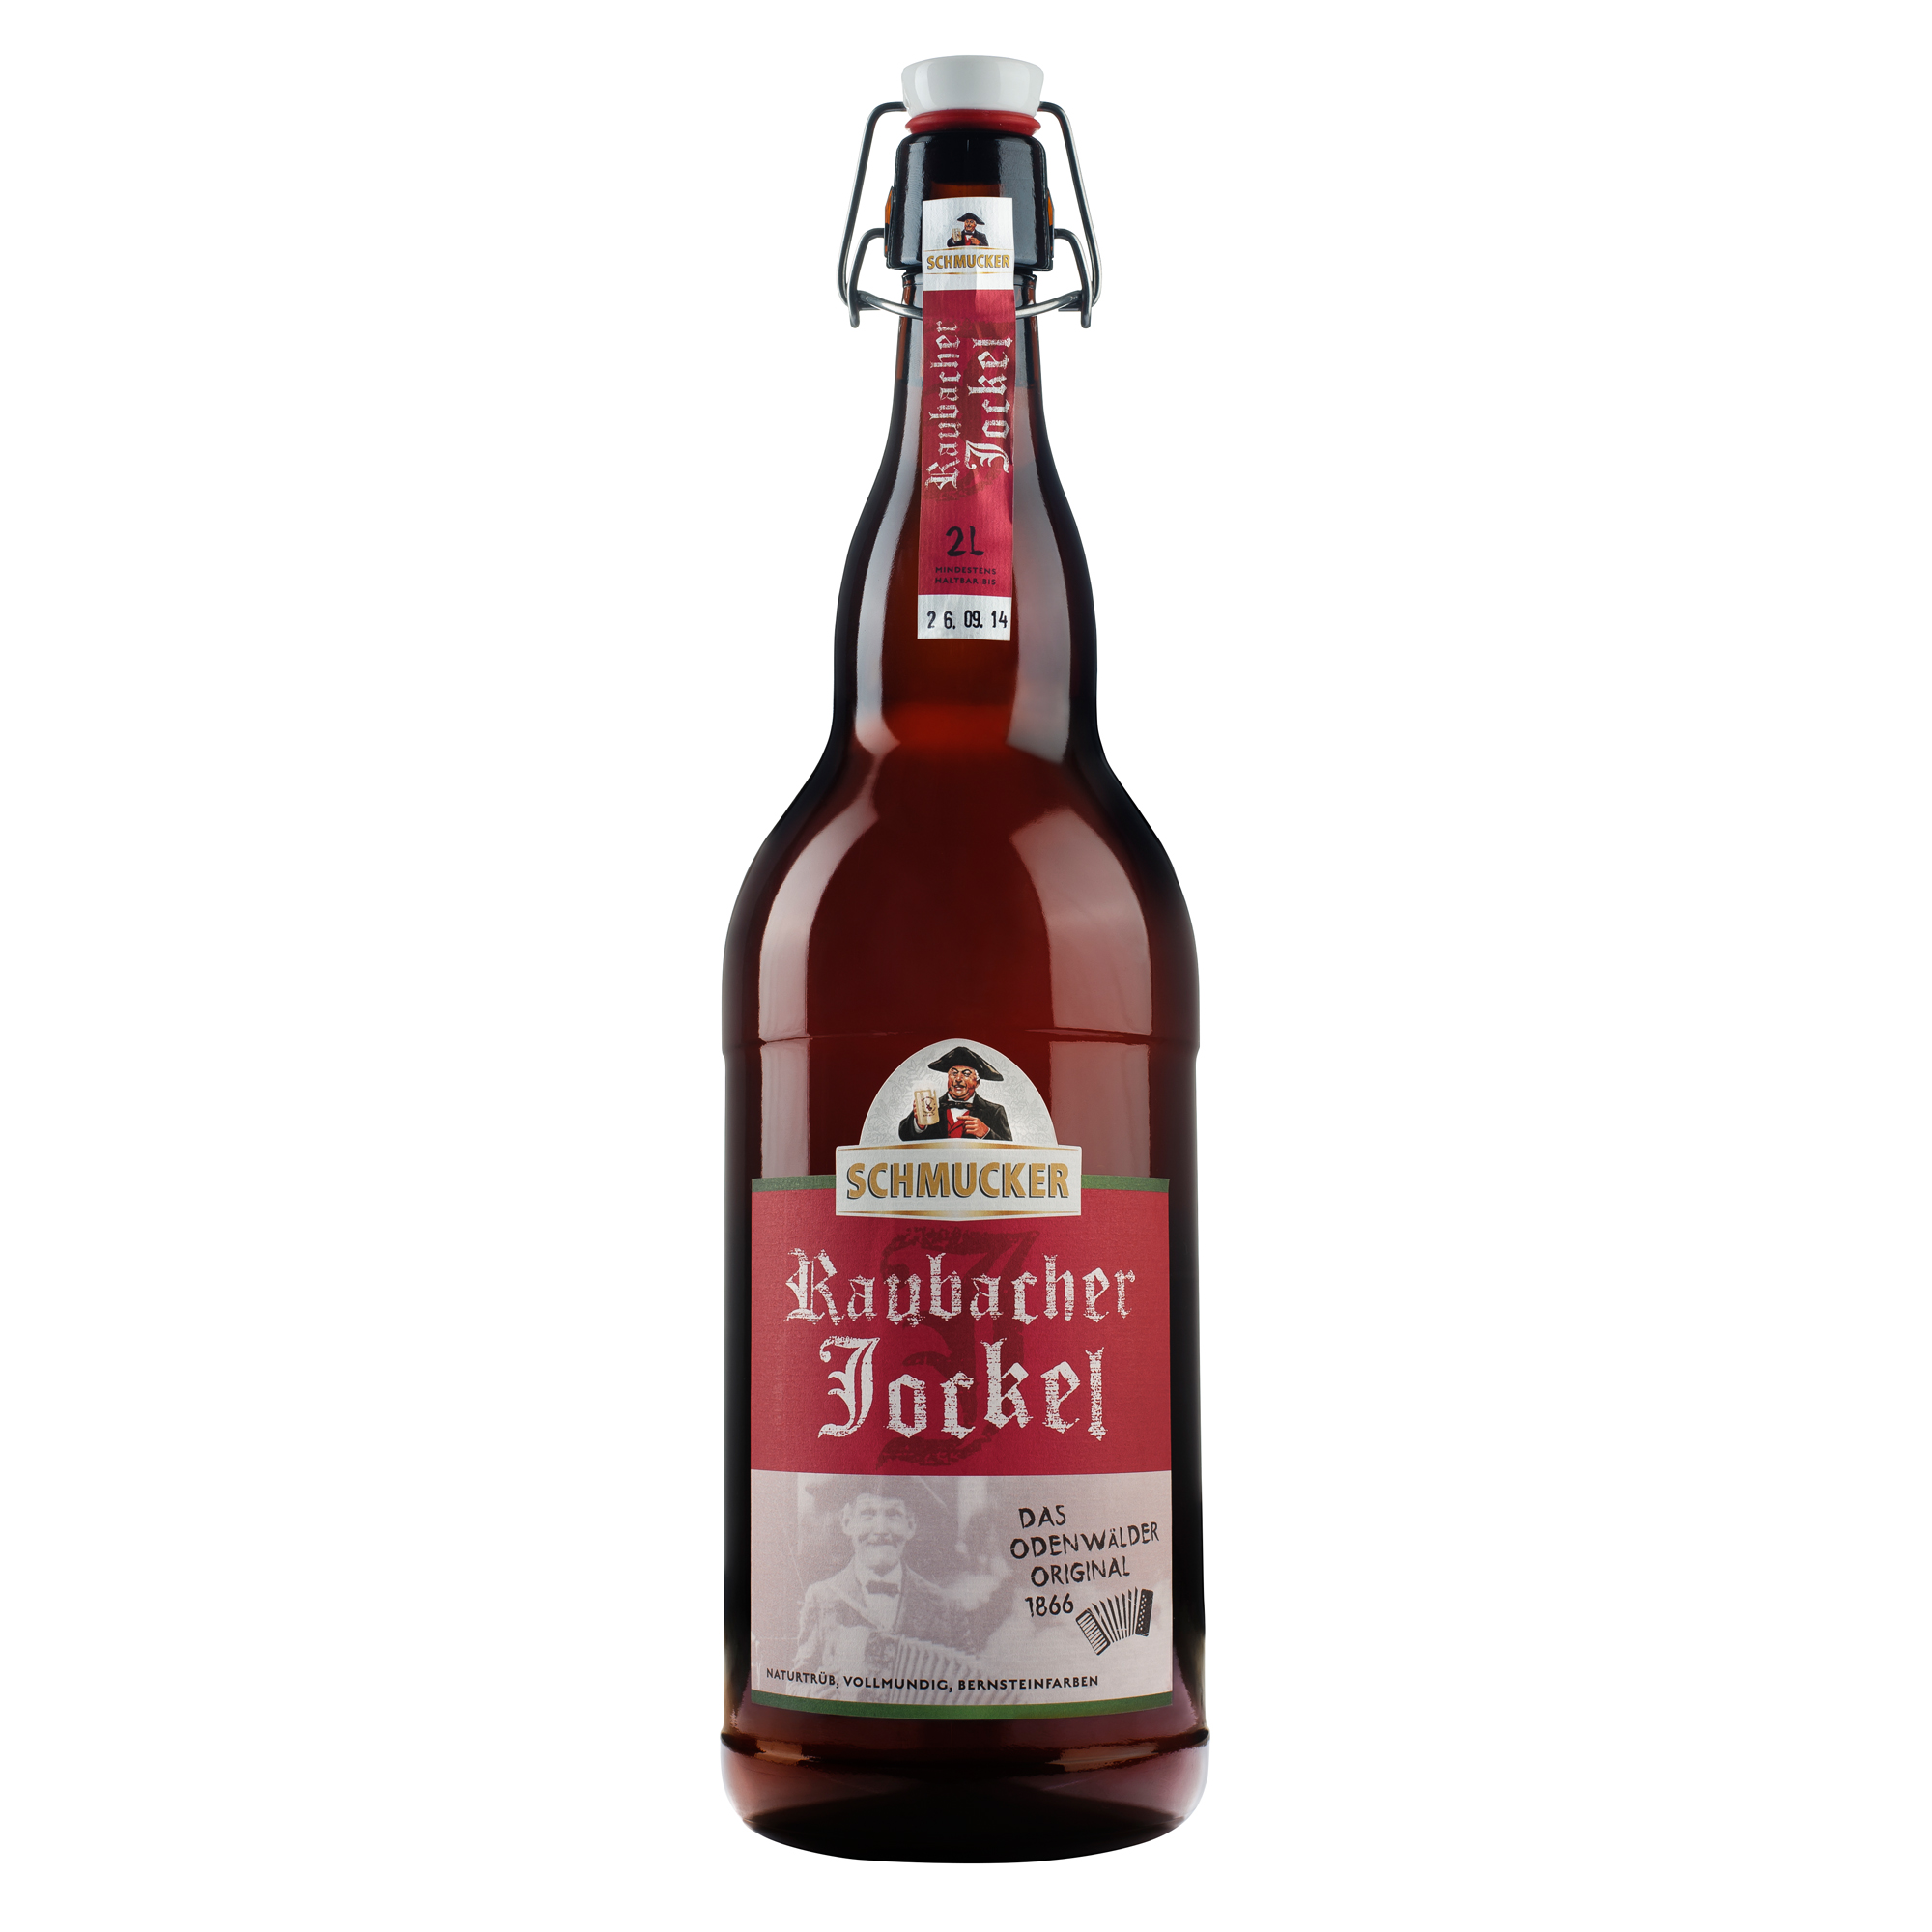 2 Liter Bier Raubacher Jockel von der Privat-Brauerei Schmucker in Mossautal